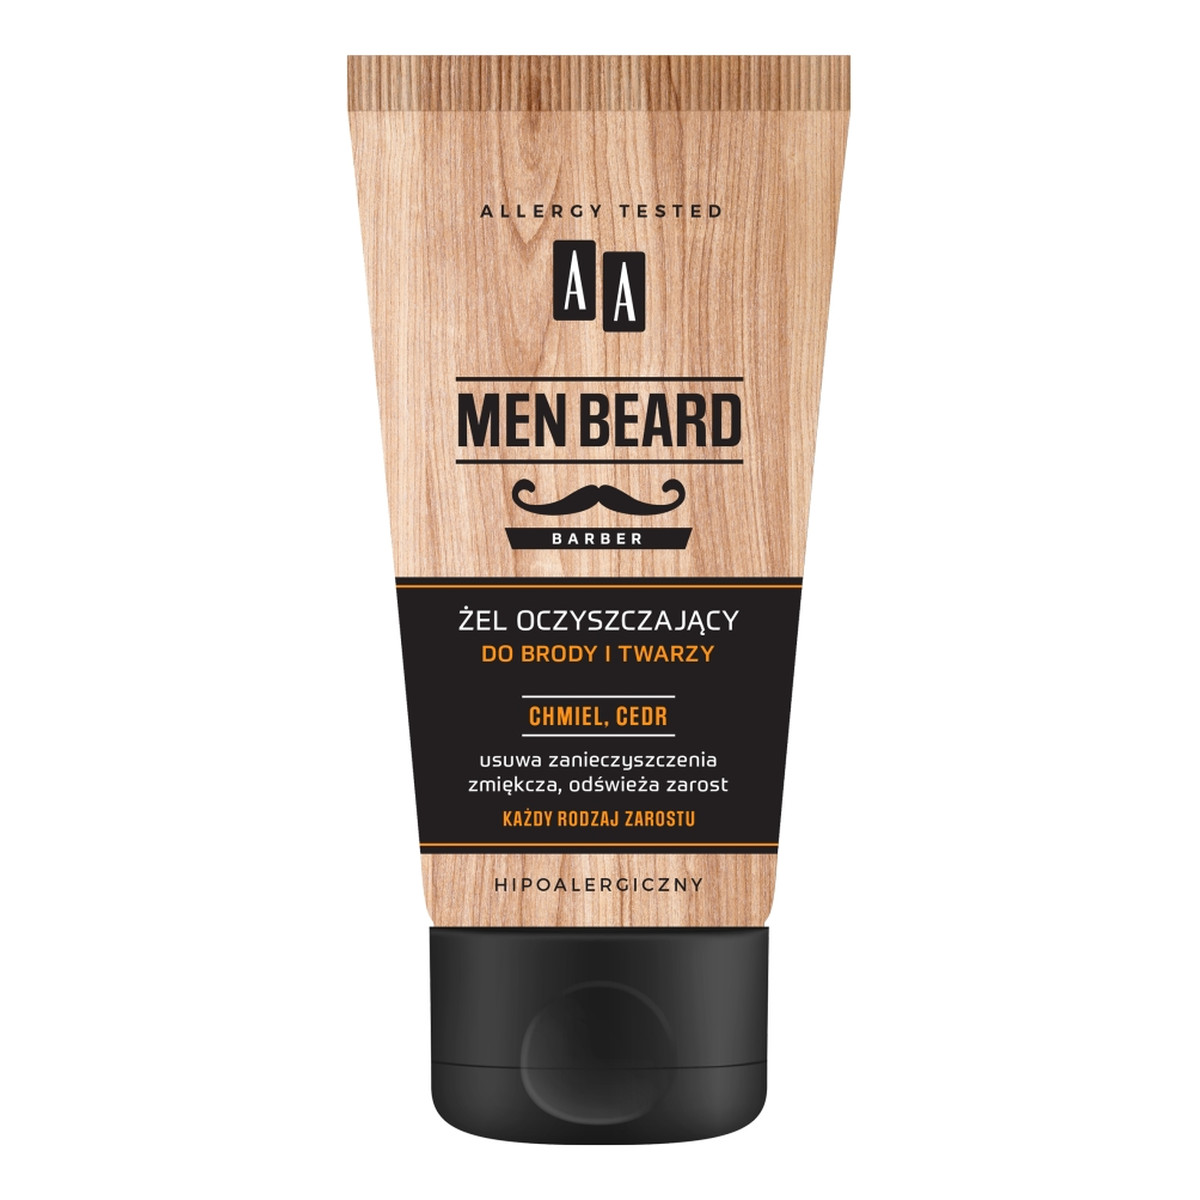 AA Men Beard Żel oczyszczający do brody i twarzy 150ml